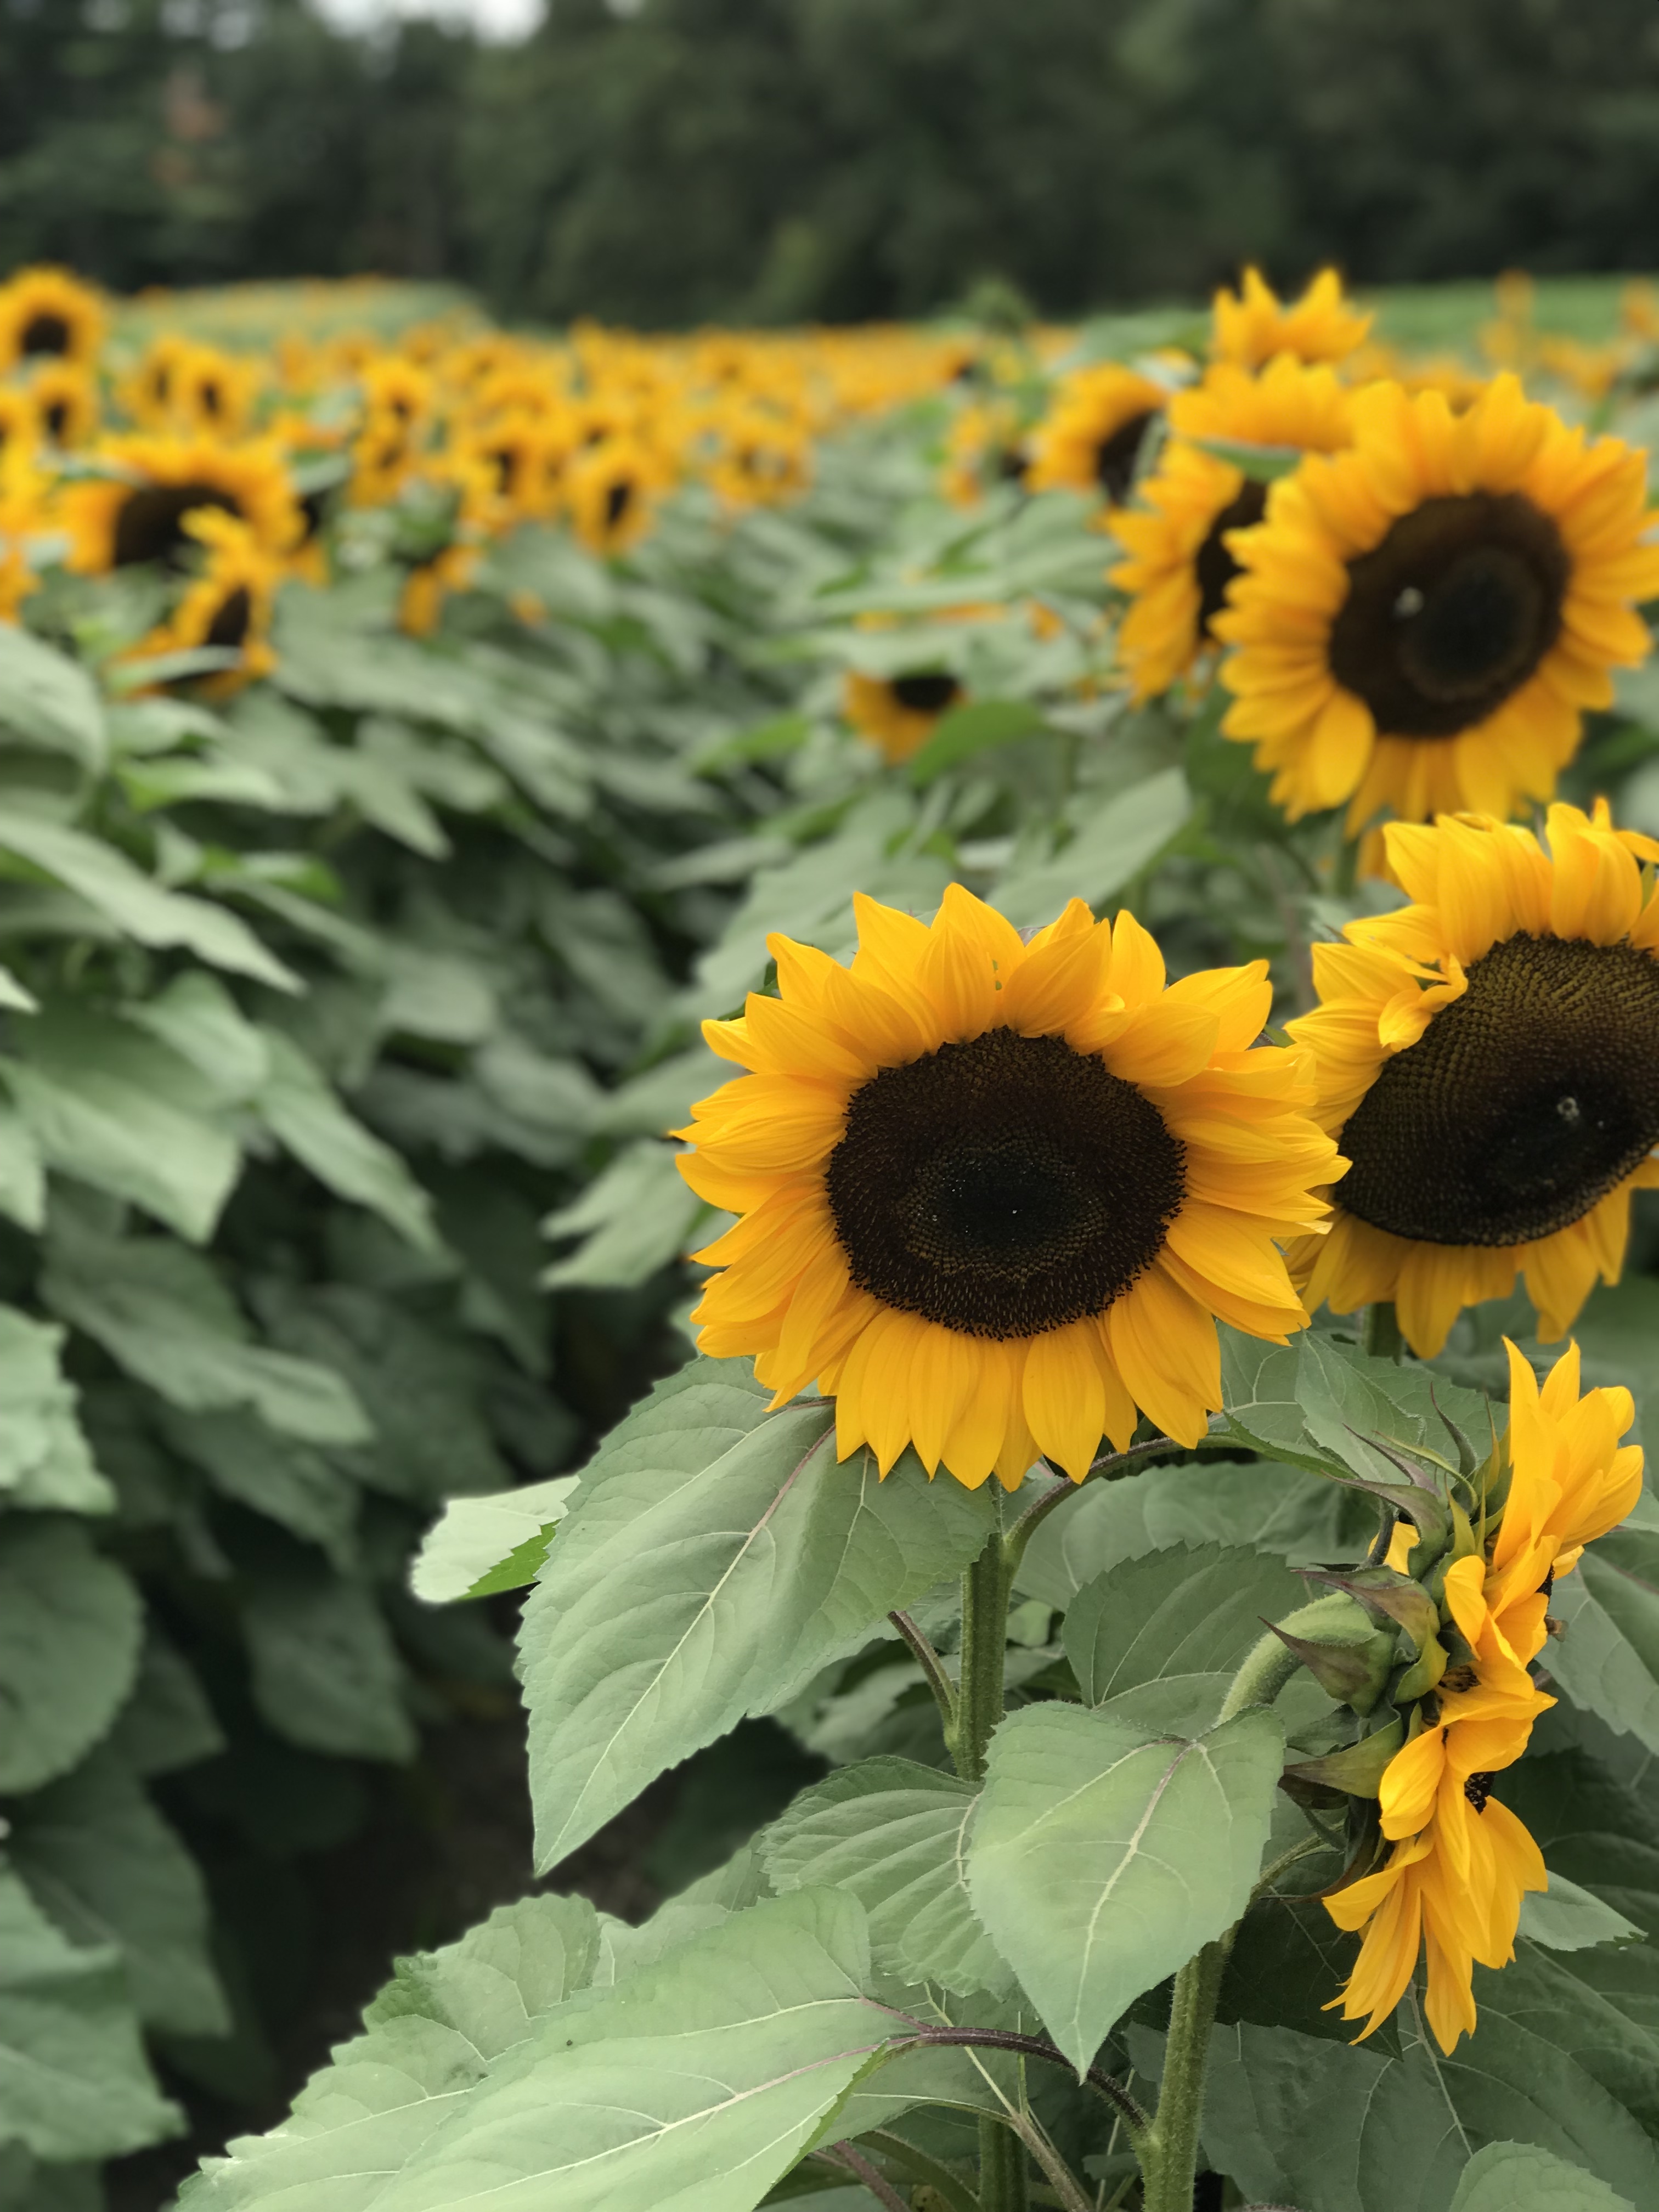 Sunflower Garden at Parlee Farms near Nashua NH